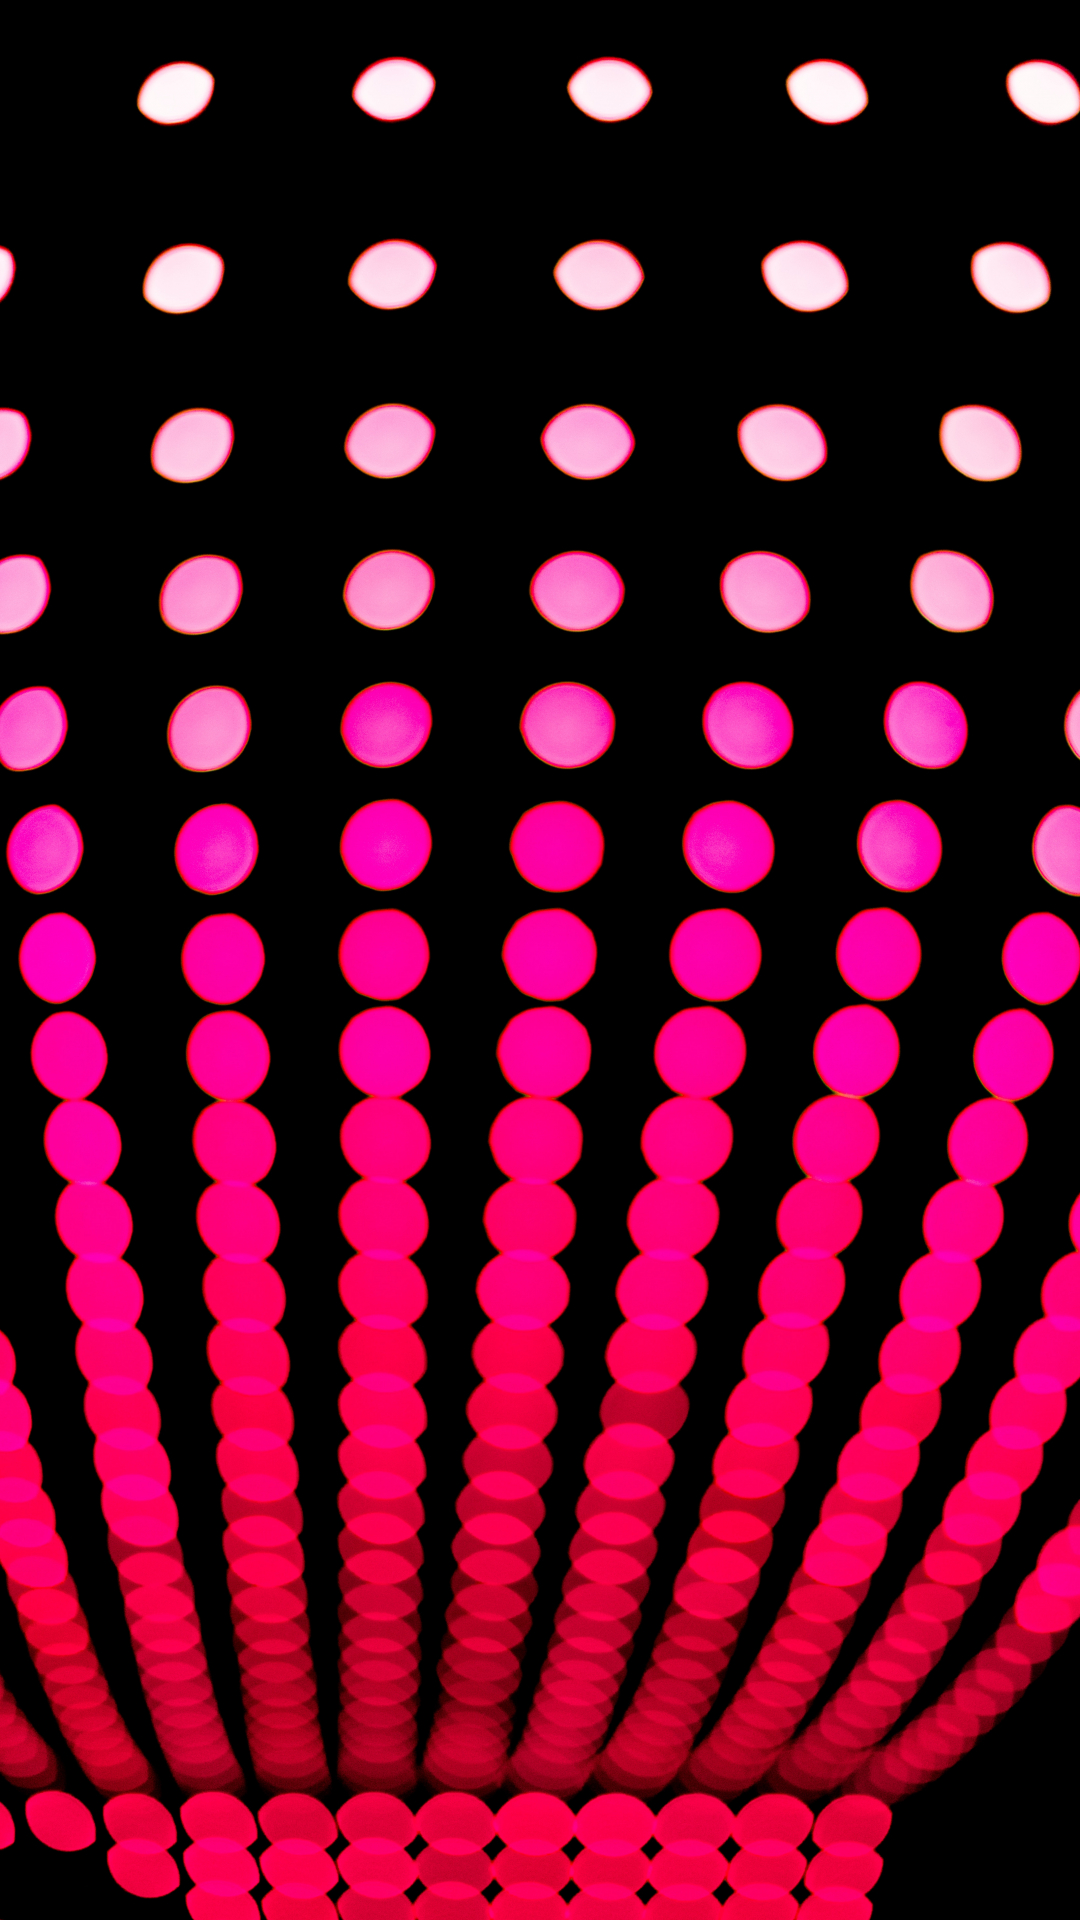 Neon Lights iPhone Wallpaper